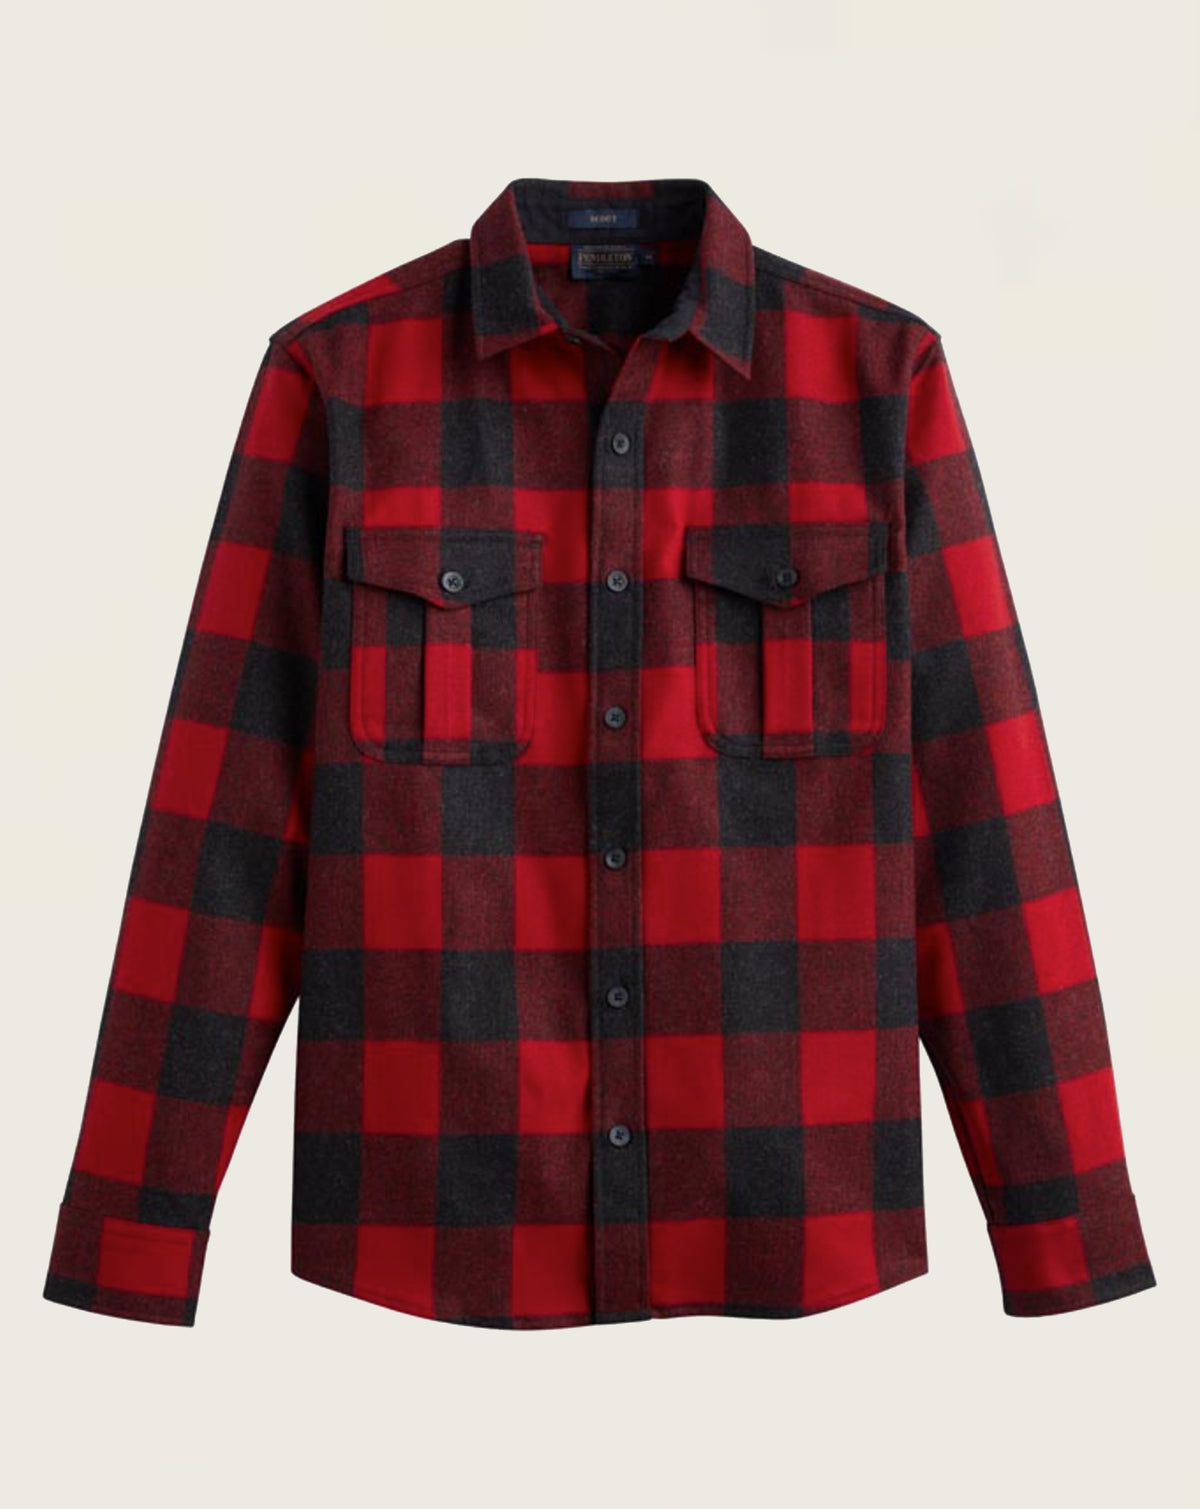 Pendleton Wool Shirts - Pendleton® Canada